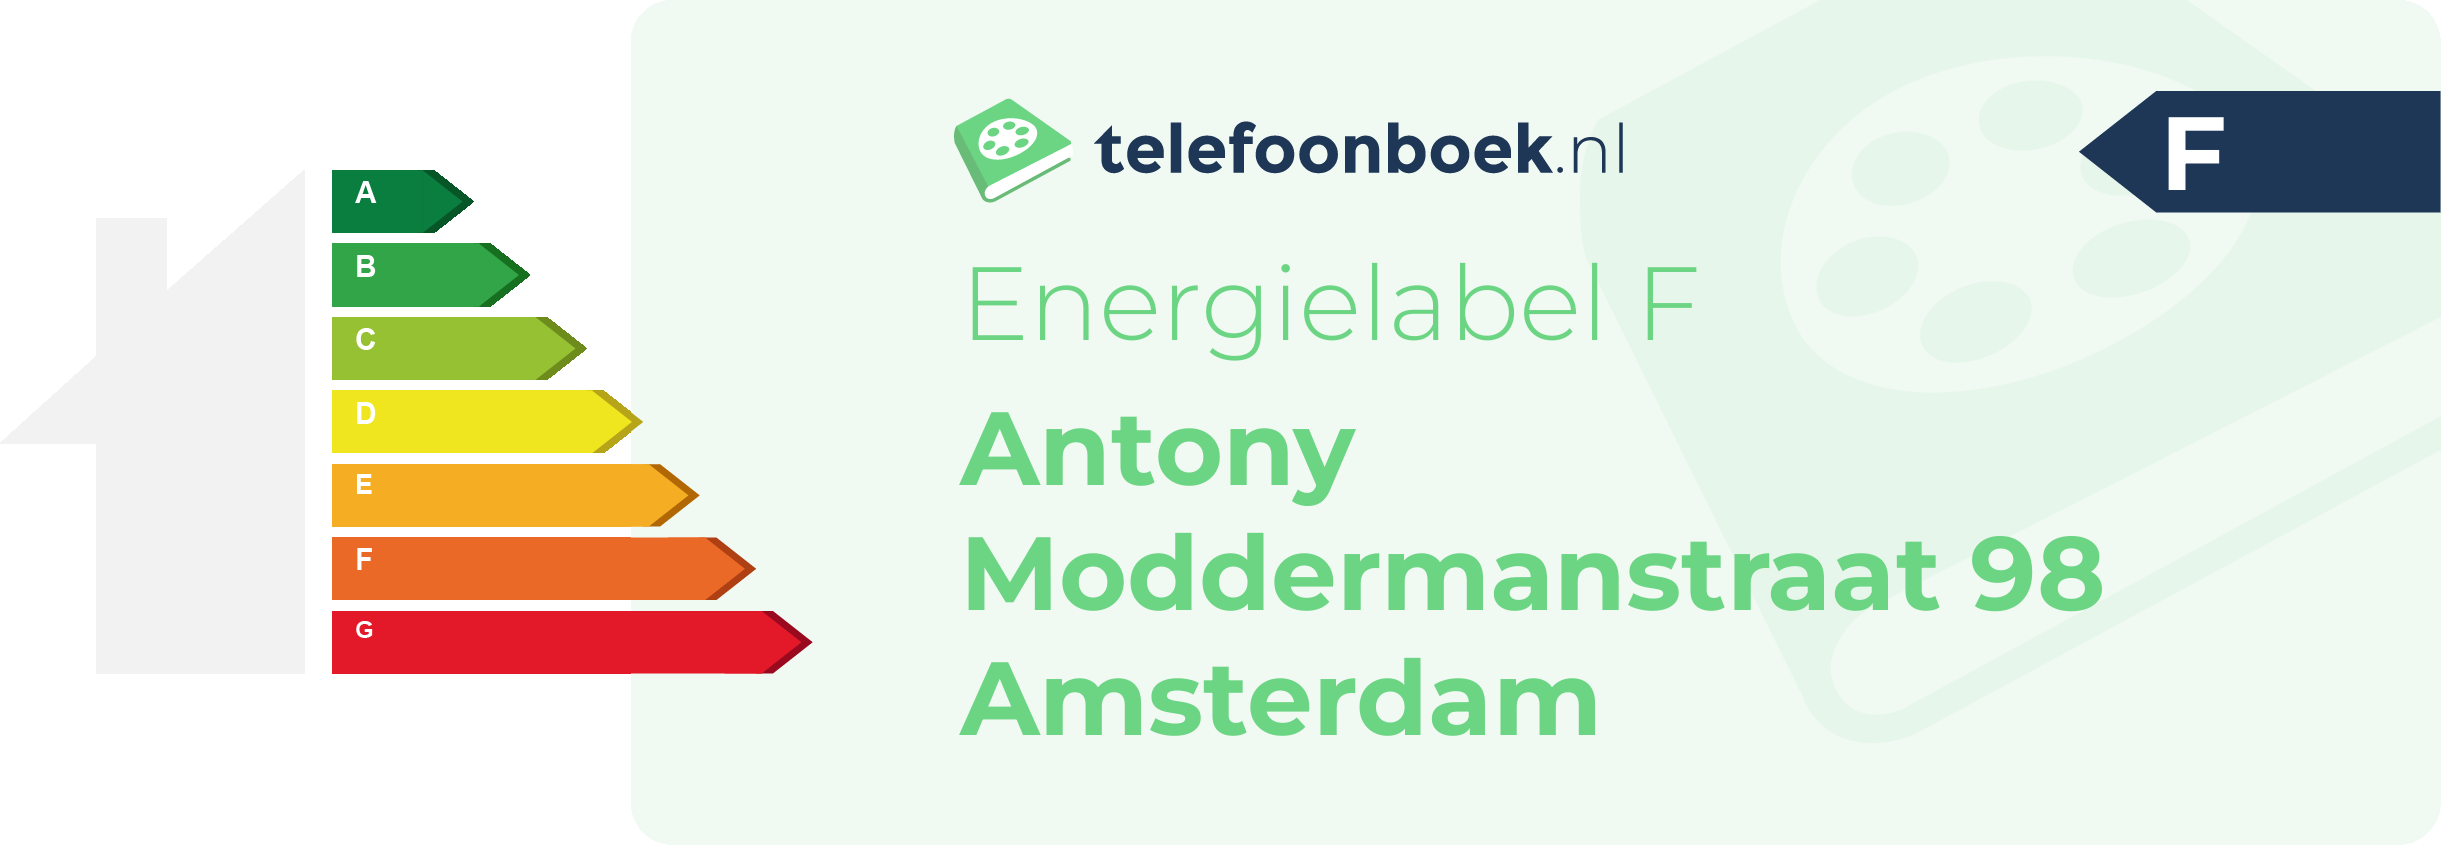 Energielabel Antony Moddermanstraat 98 Amsterdam